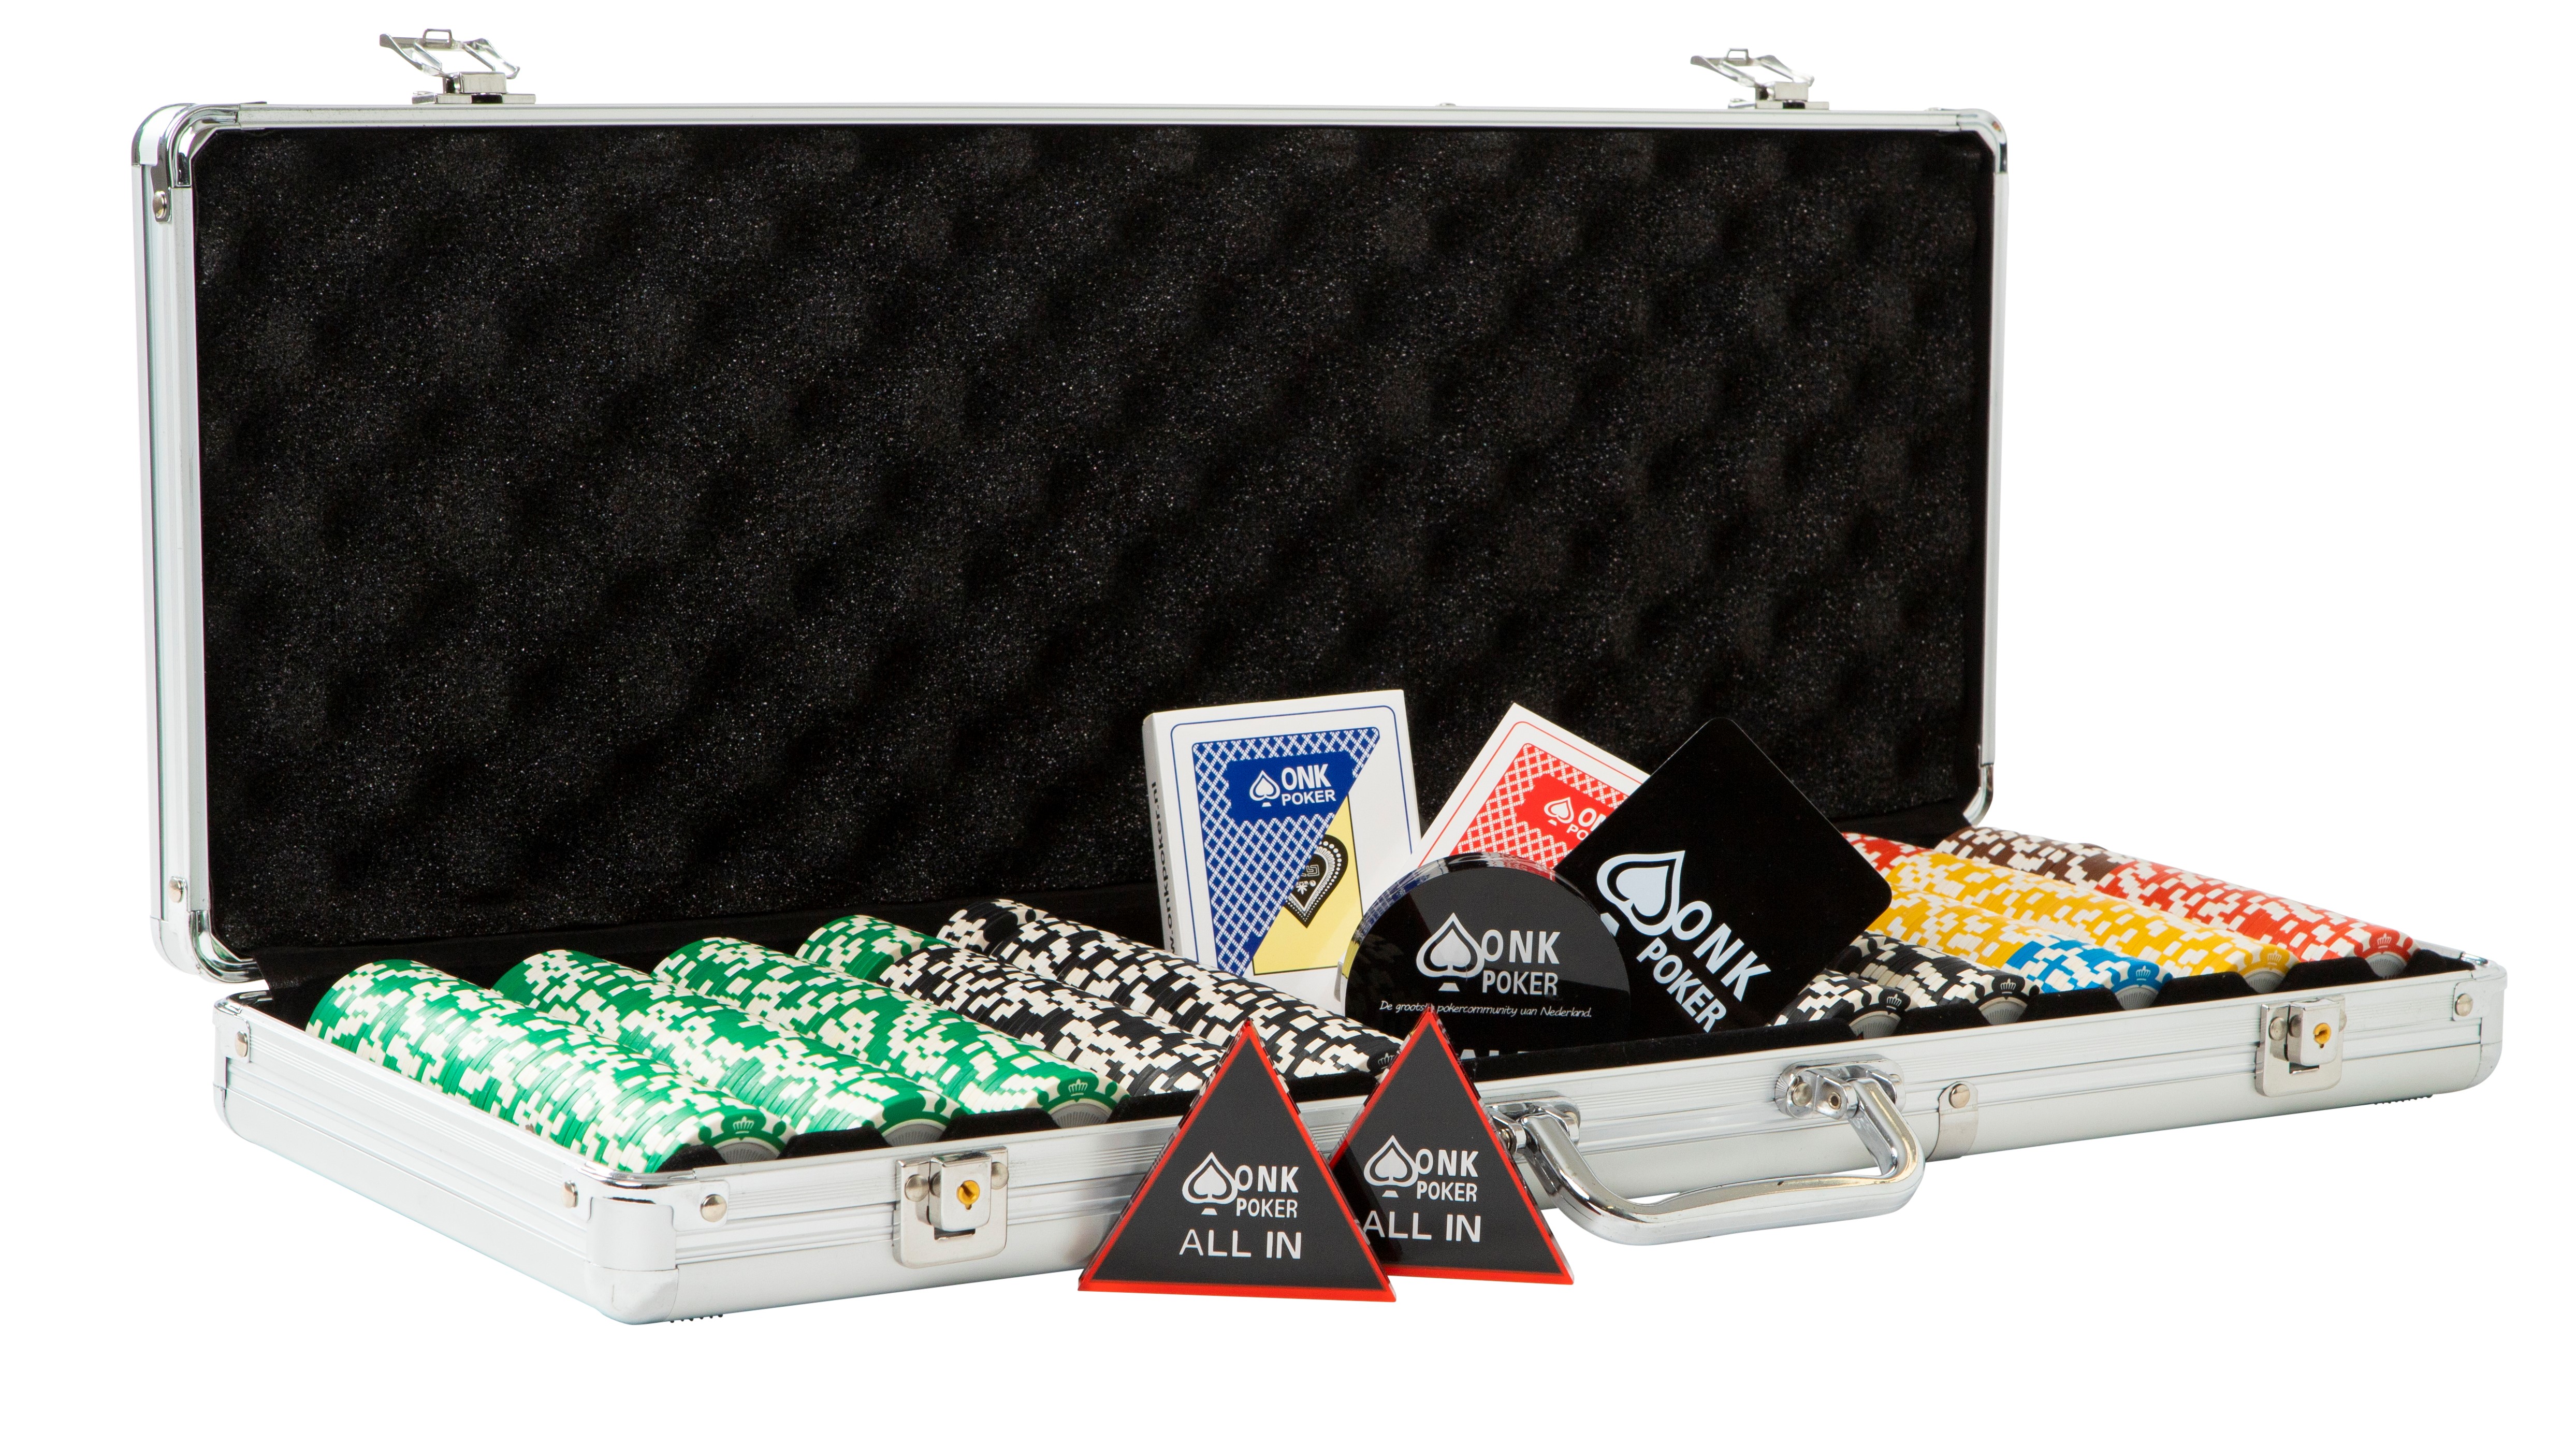 verdieping Verslinden Verdorie Pokerkoffer kopen ✓ Complete koffer ONK Poker ✓ - ONK Poker